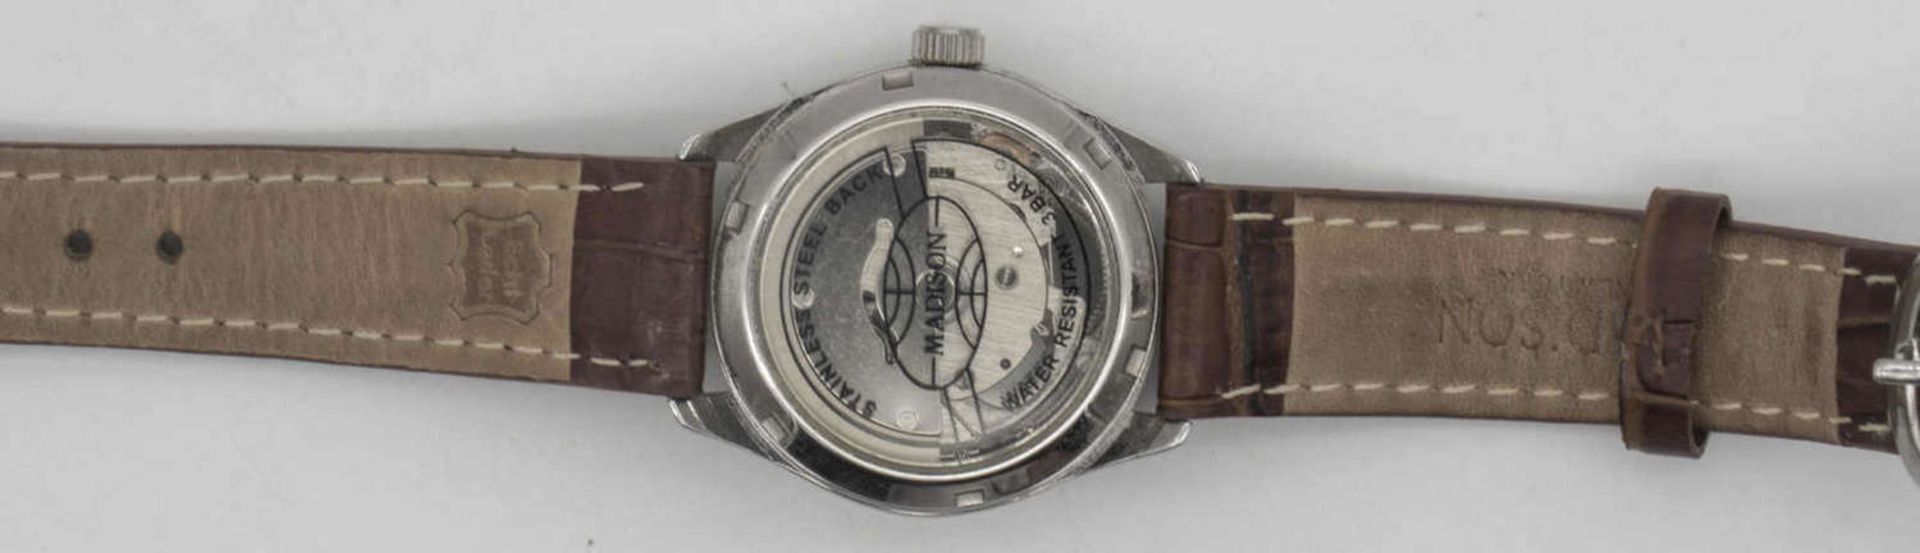 Zwei Armbanduhren: 1. Junghans Mega Funkuhr, goldfarbene Lünette, weißes Ziffernblatt mit - Bild 2 aus 2